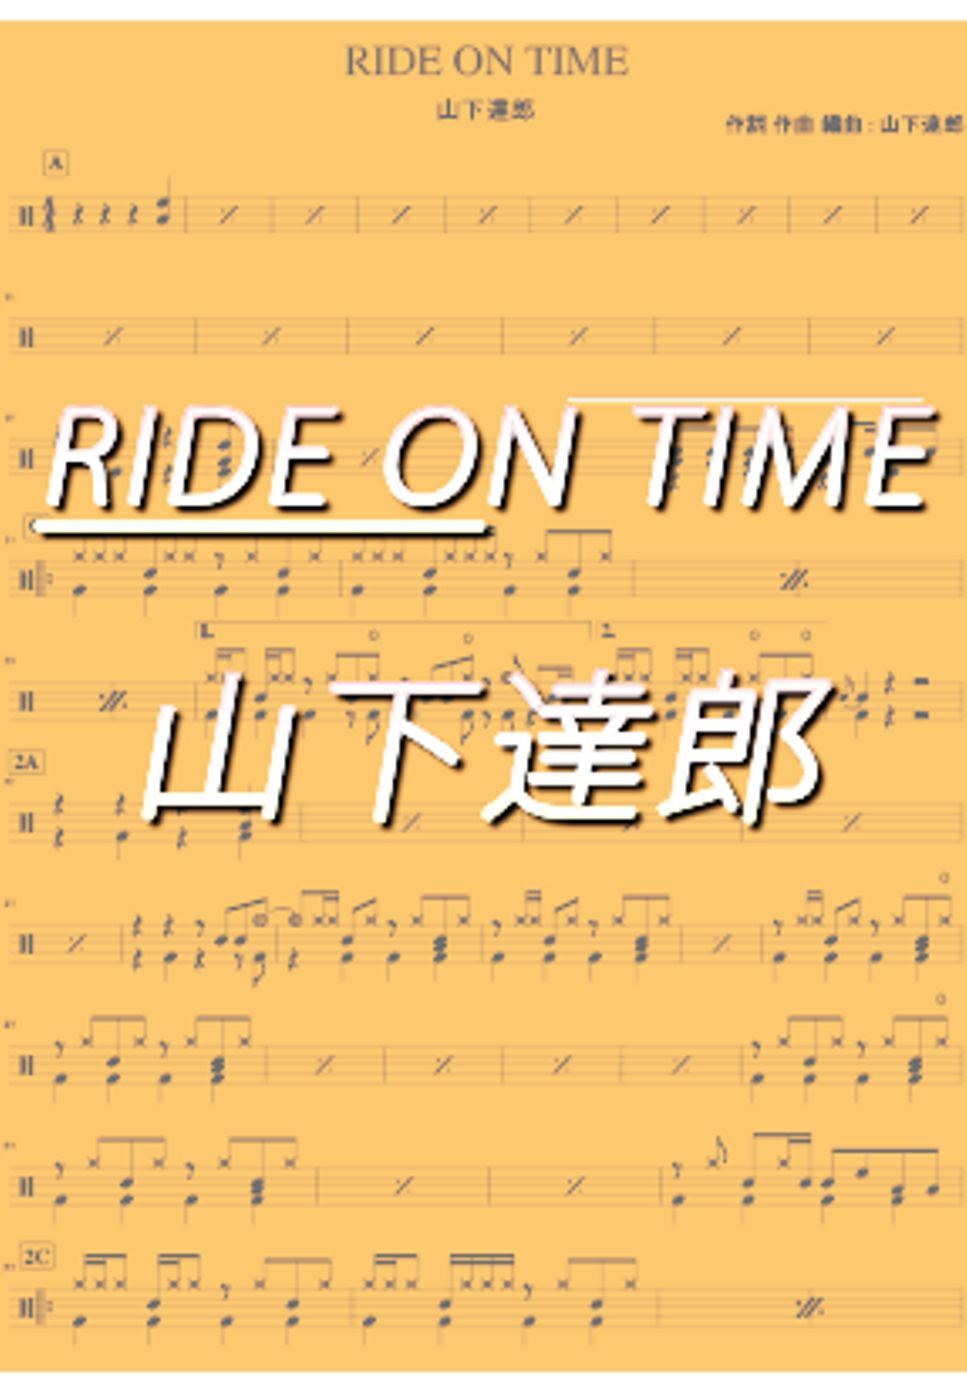 山下達郎 - RIDE ON TIME by DSU